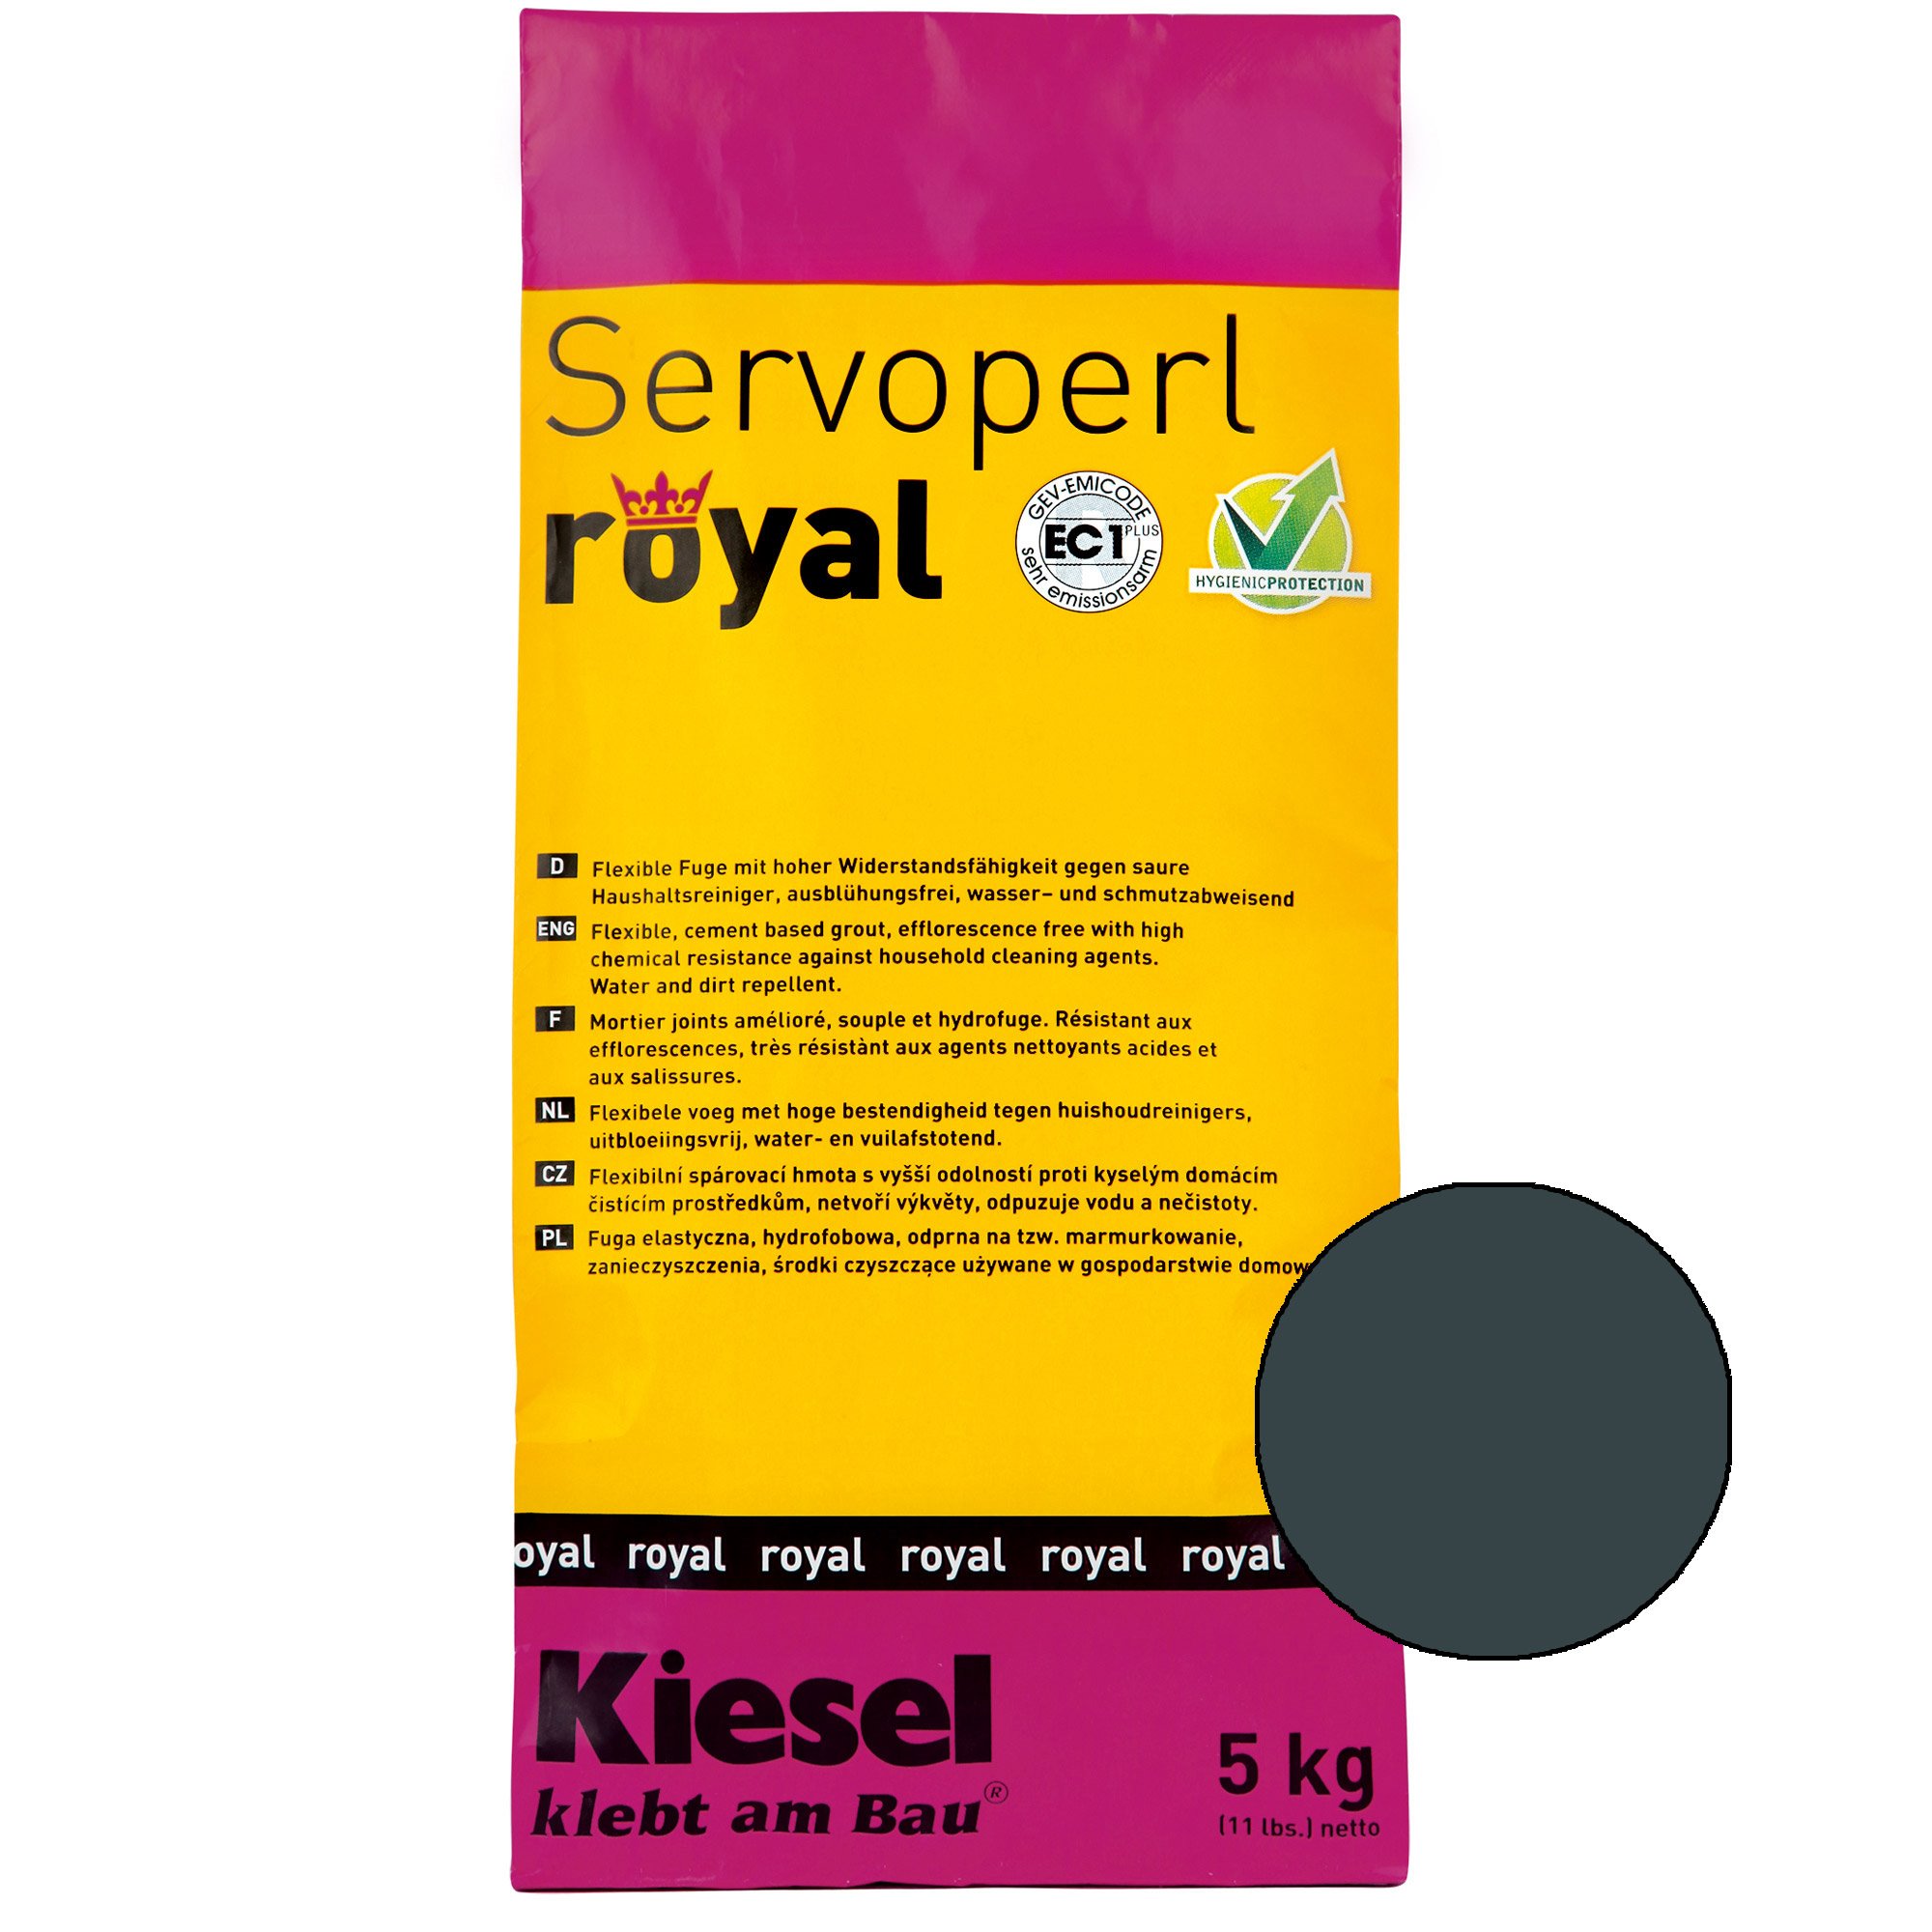 Kiesel Servoperl royal - Flexible, wasser- und schmutzabweisende Fuge (5KG Desert Sand)